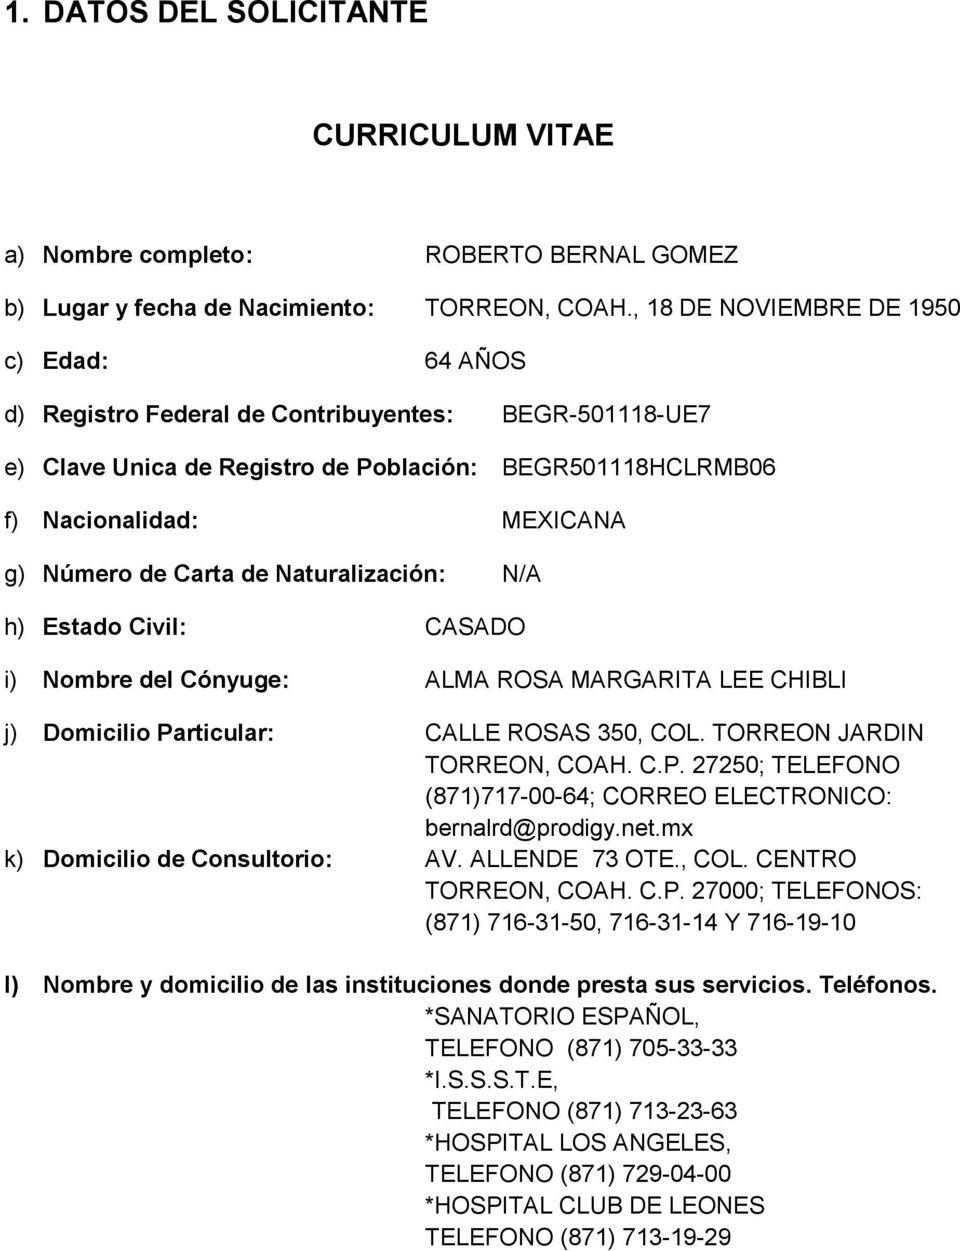 Carta de Naturalización: N/A h) Estado Civil: CASADO i) Nombre del Cónyuge: ALMA ROSA MARGARITA LEE CHIBLI j) Domicilio Particular: CALLE ROSAS 350, COL. TORREON JARDIN TORREON, COAH. C.P. 27250; TELEFONO (871)717-00-64; CORREO ELECTRONICO: bernalrd@prodigy.